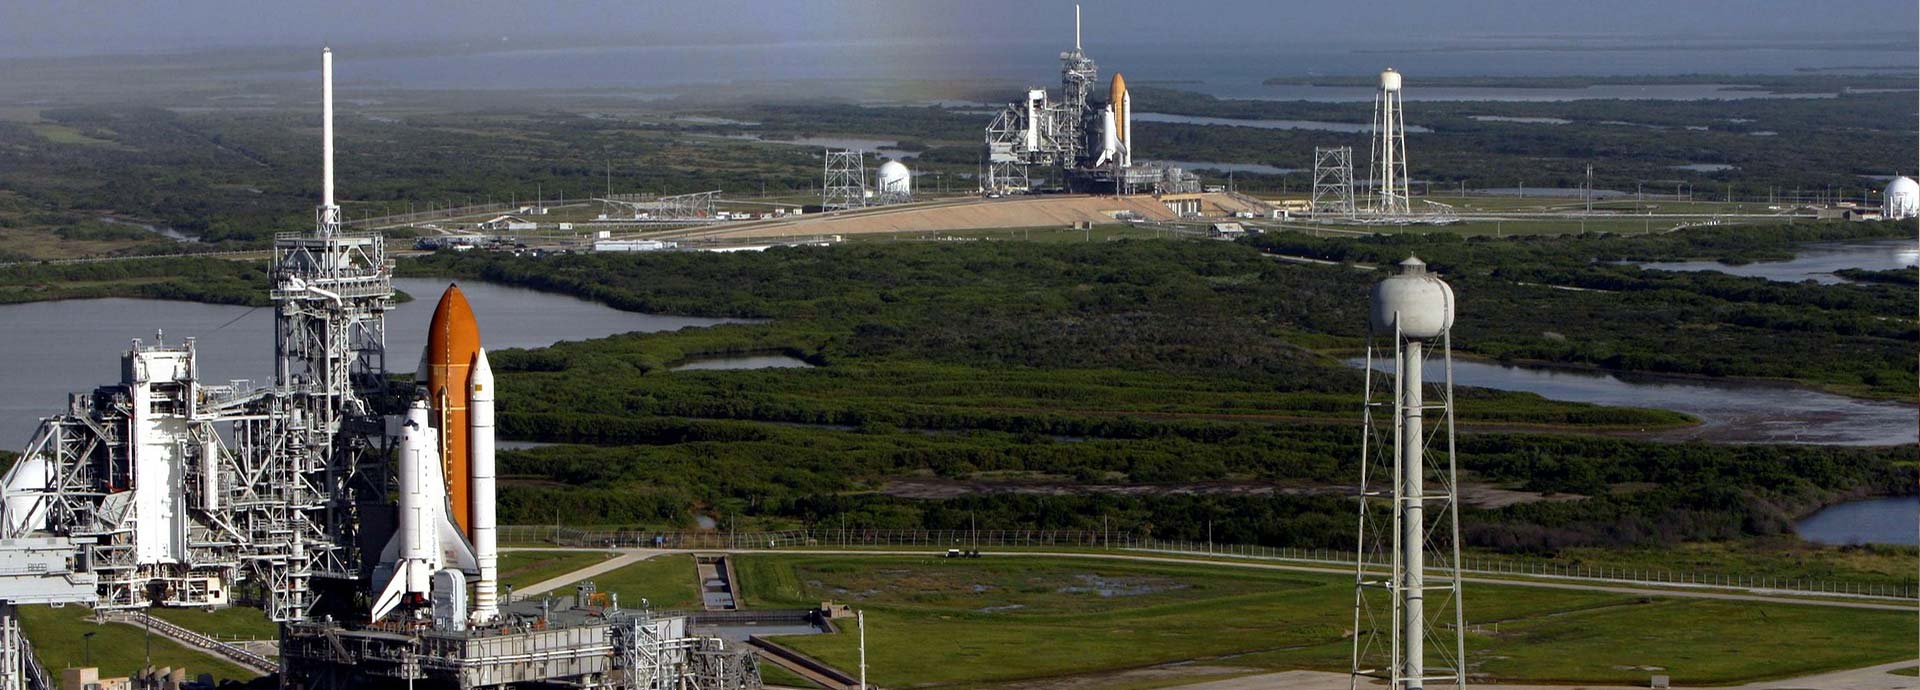 Visitando o Centro Espacial Kennedy na Florida